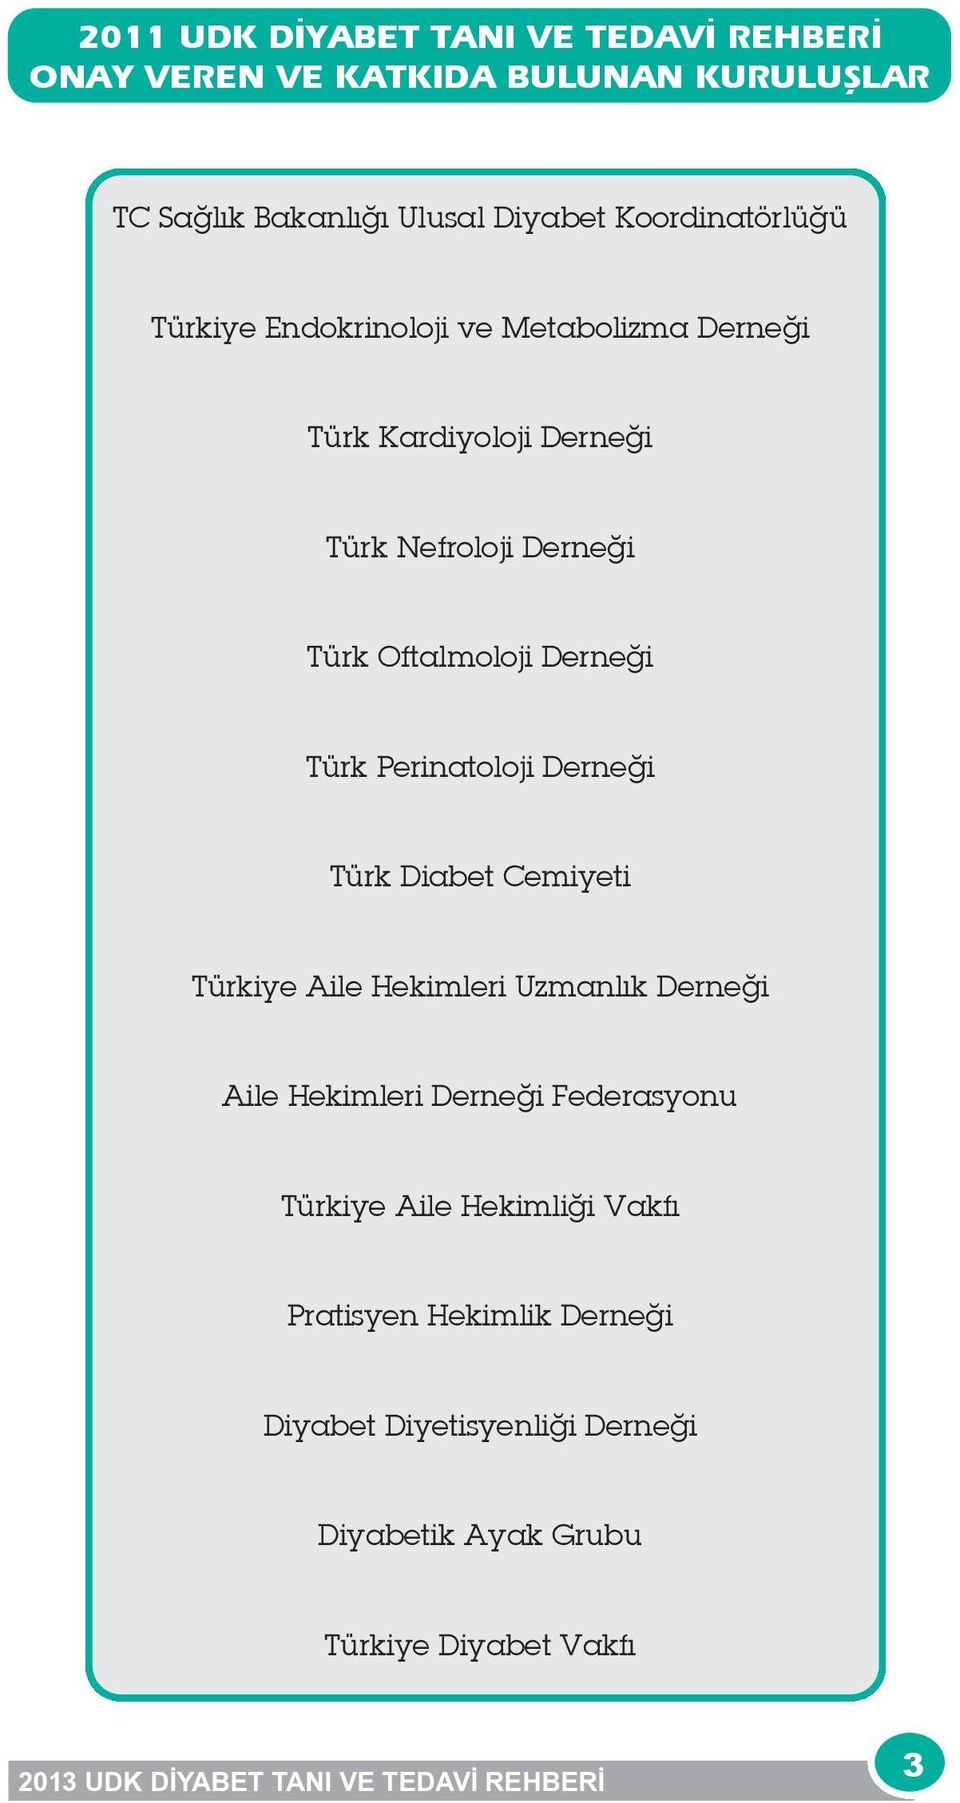 Derneği Türk Perinatoloji Derneği Türk Diabet Cemiyeti Türkiye Aile Hekimleri Uzmanlık Derneği Aile Hekimleri Derneği